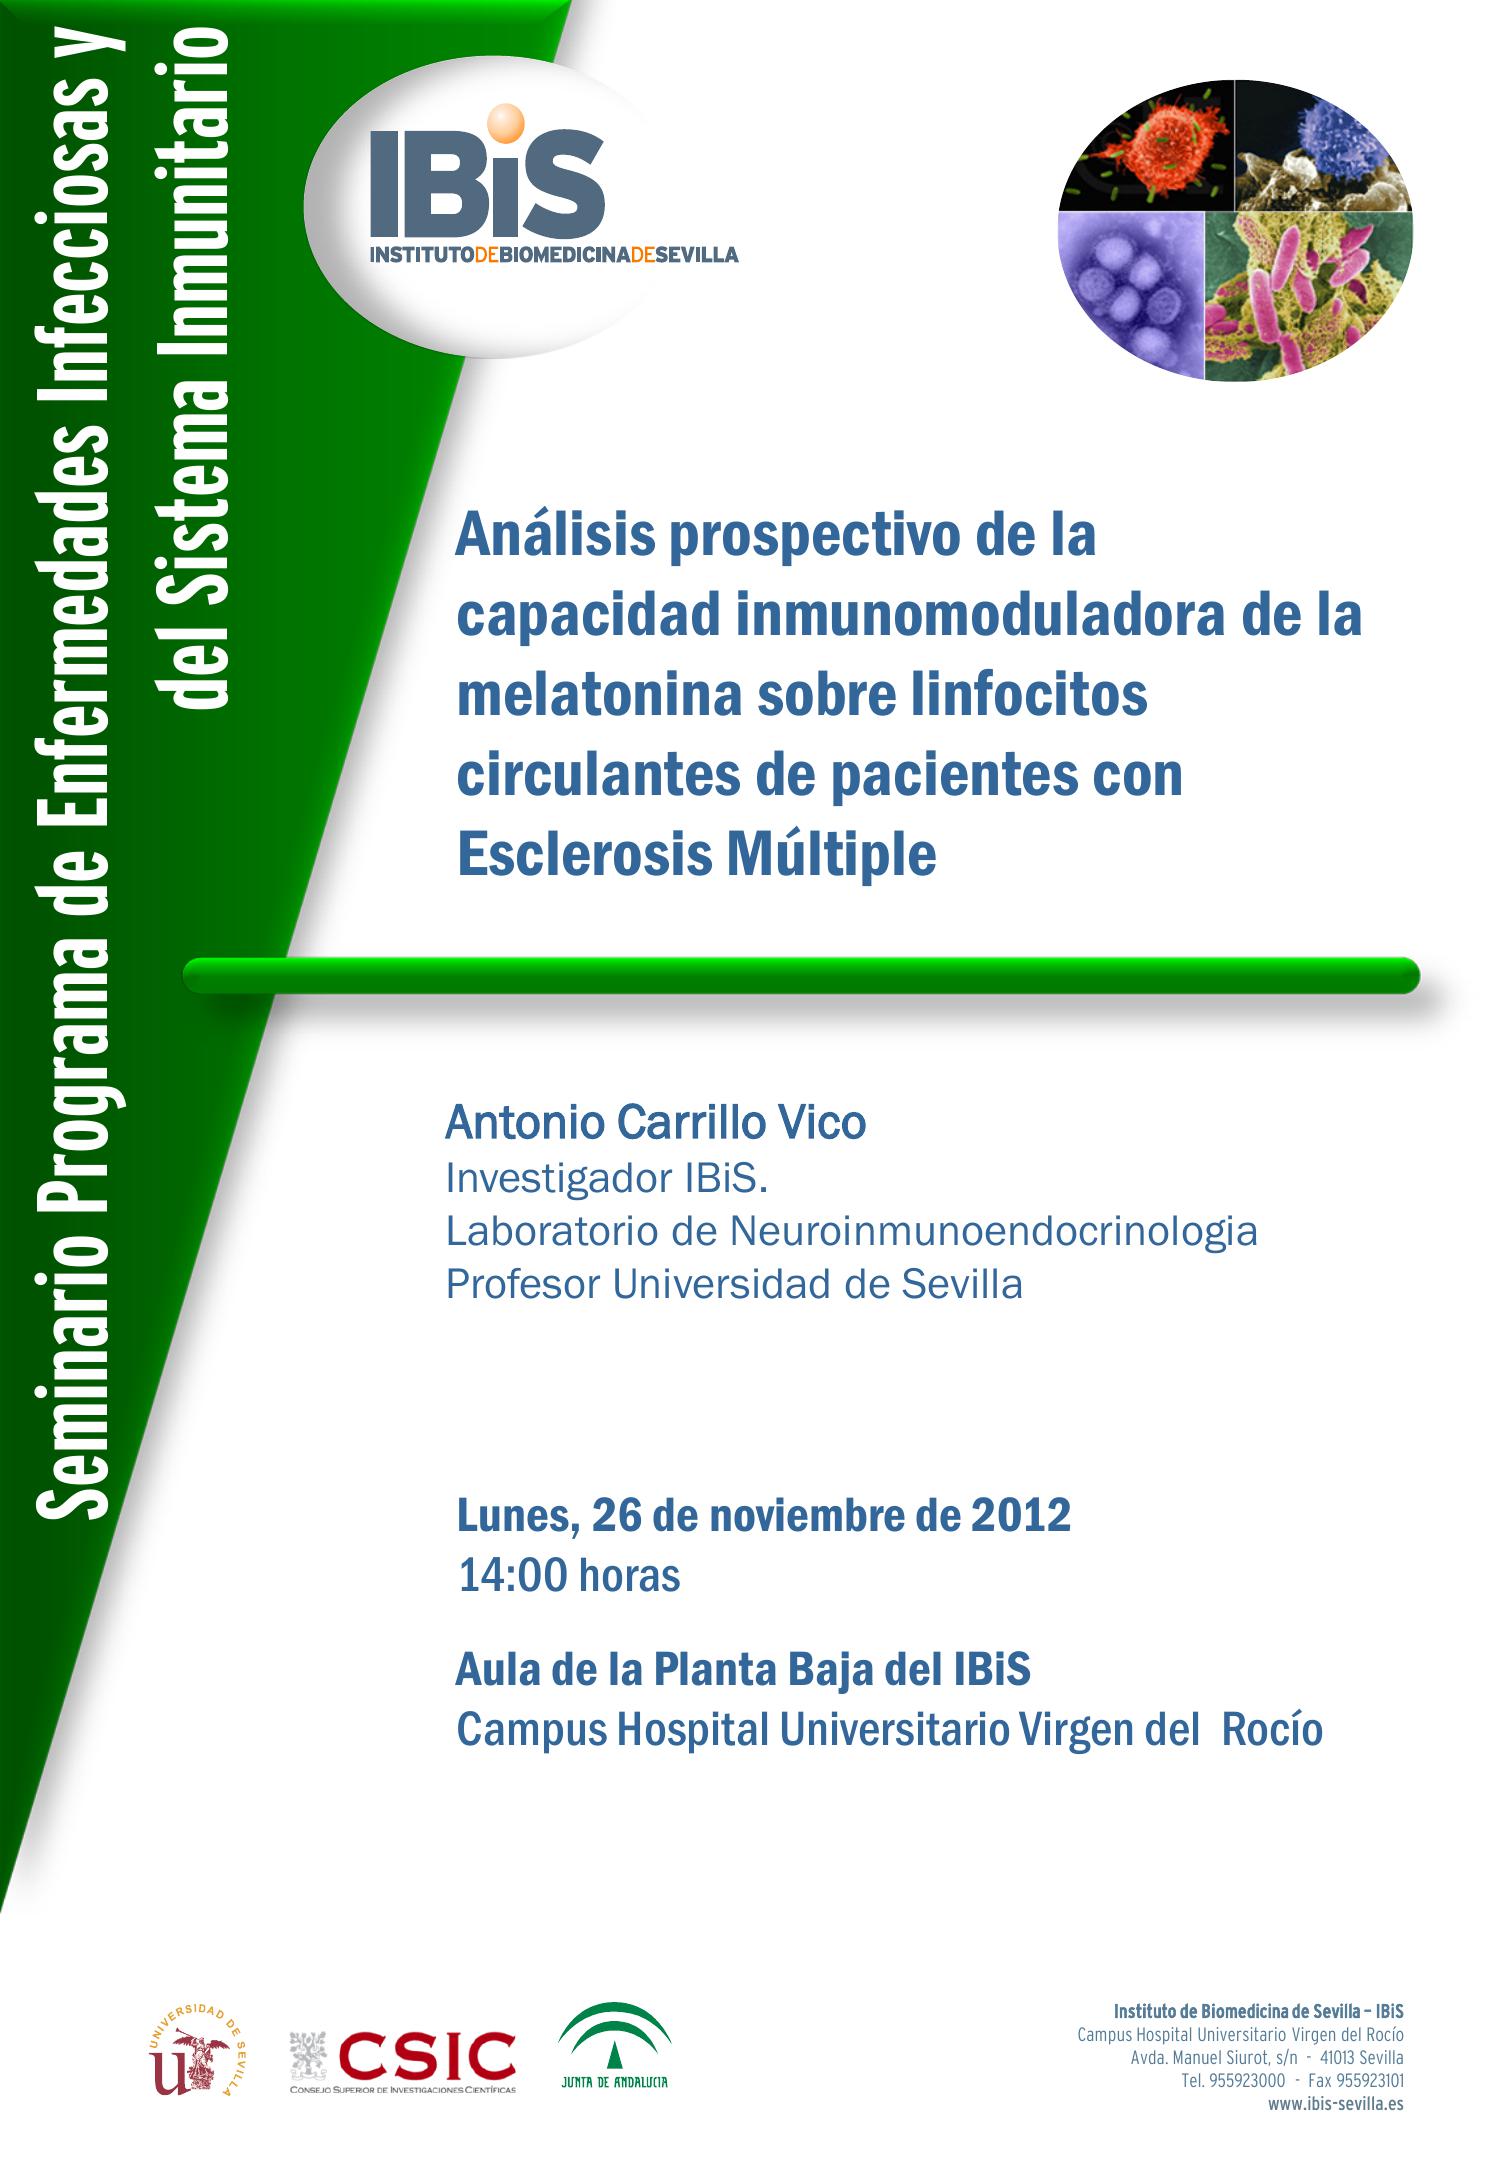 Poster: Análisis prospectivo de la capacidad inmunomoduladora de la melatonina sobre linfocitos circulantes de pacientes con Esclerosis Múltiple.